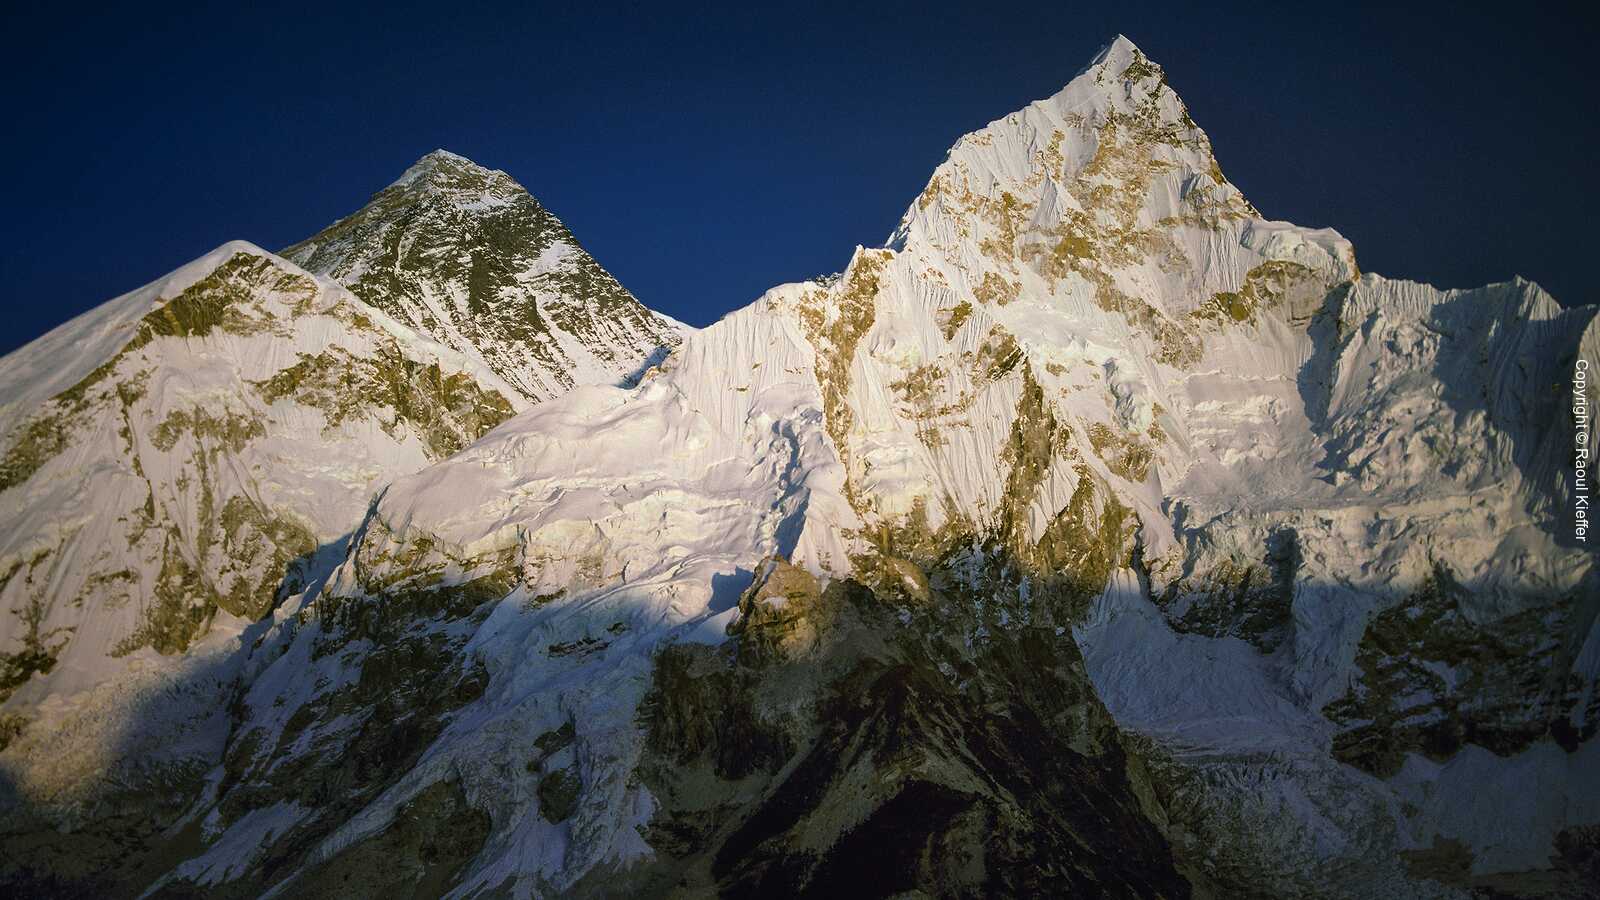 Khumbu 1991